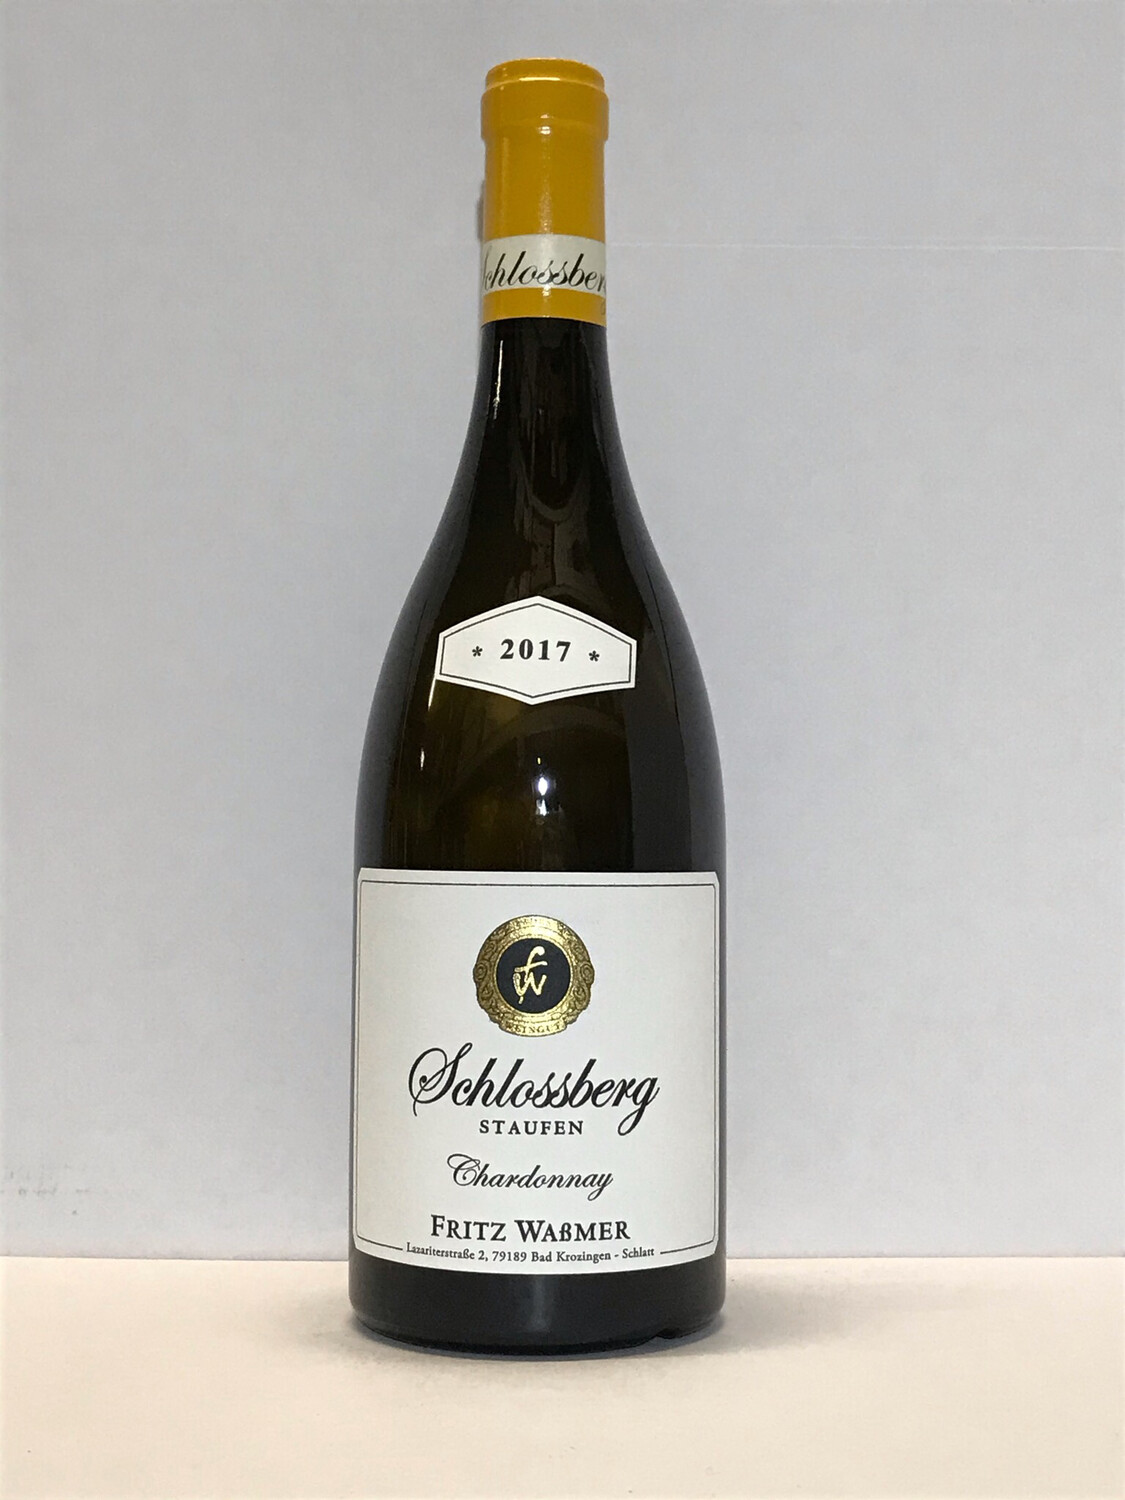 Chardonnay-Grandcru-2019 droog Staufen Schlossberg-Fritz Wassmer (Baden)